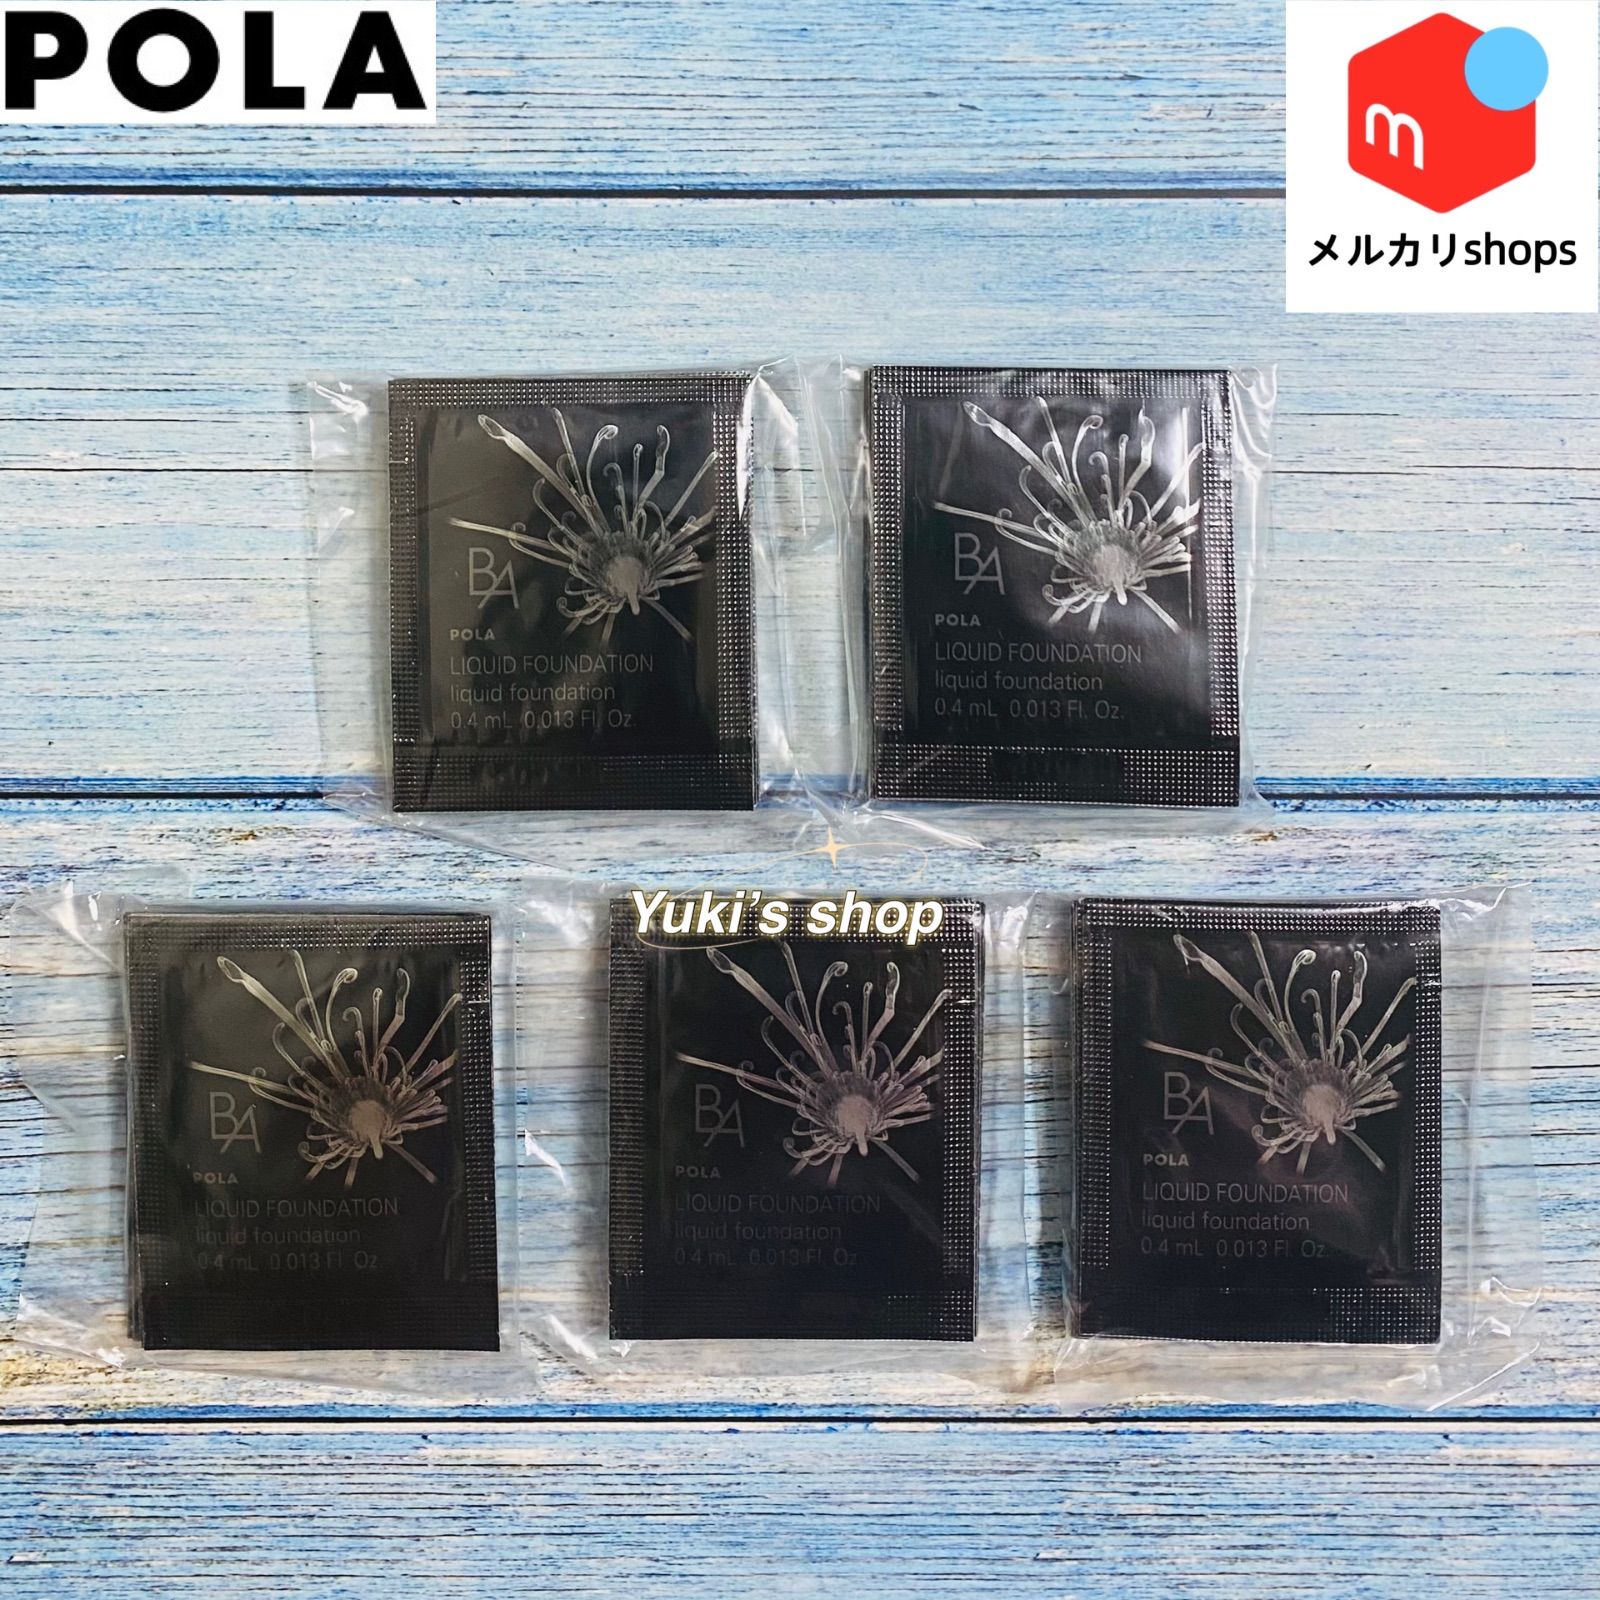 新発売 POLA BA リキッドファンデーションN3 0.4ml ×30包 - BBクリーム